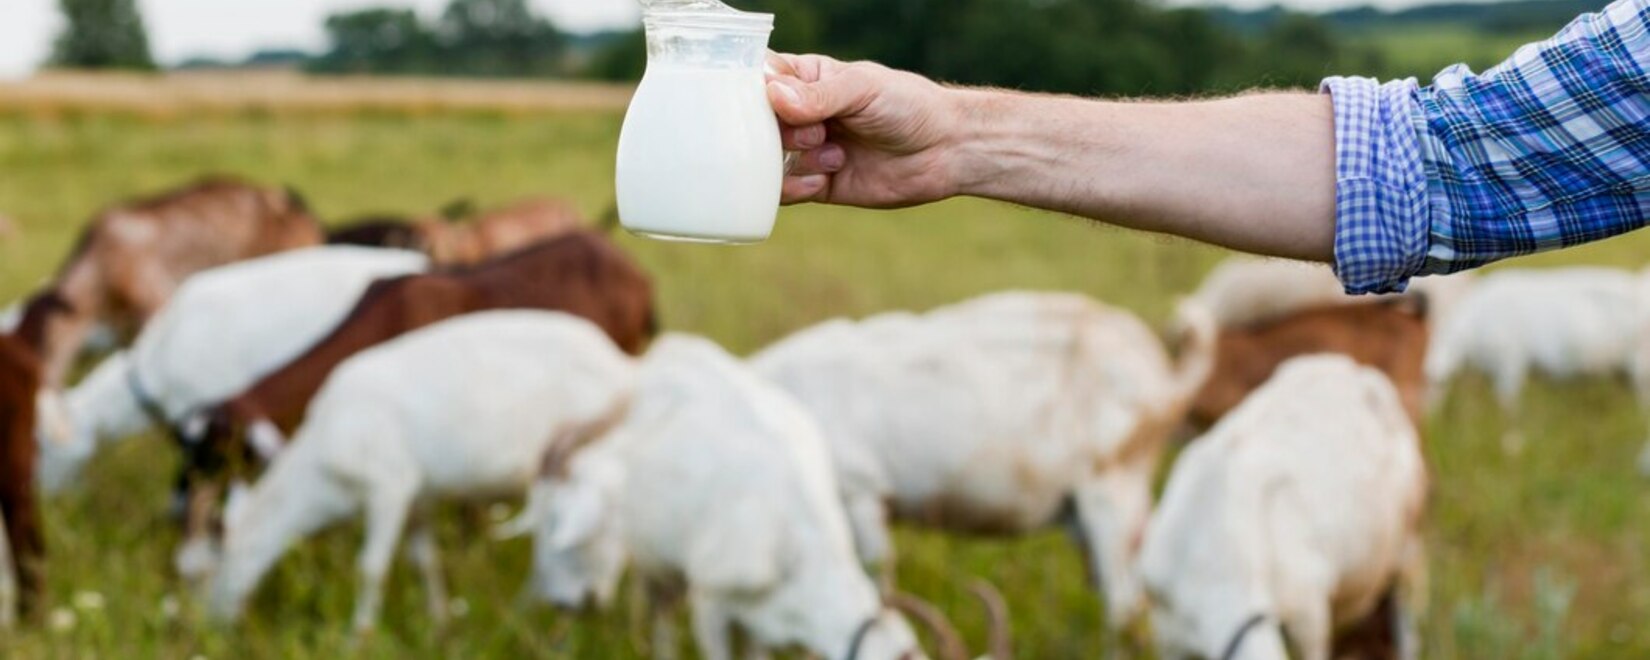 基于遗传因素开发了评估大型牛的系统，以增加牛奶产量。